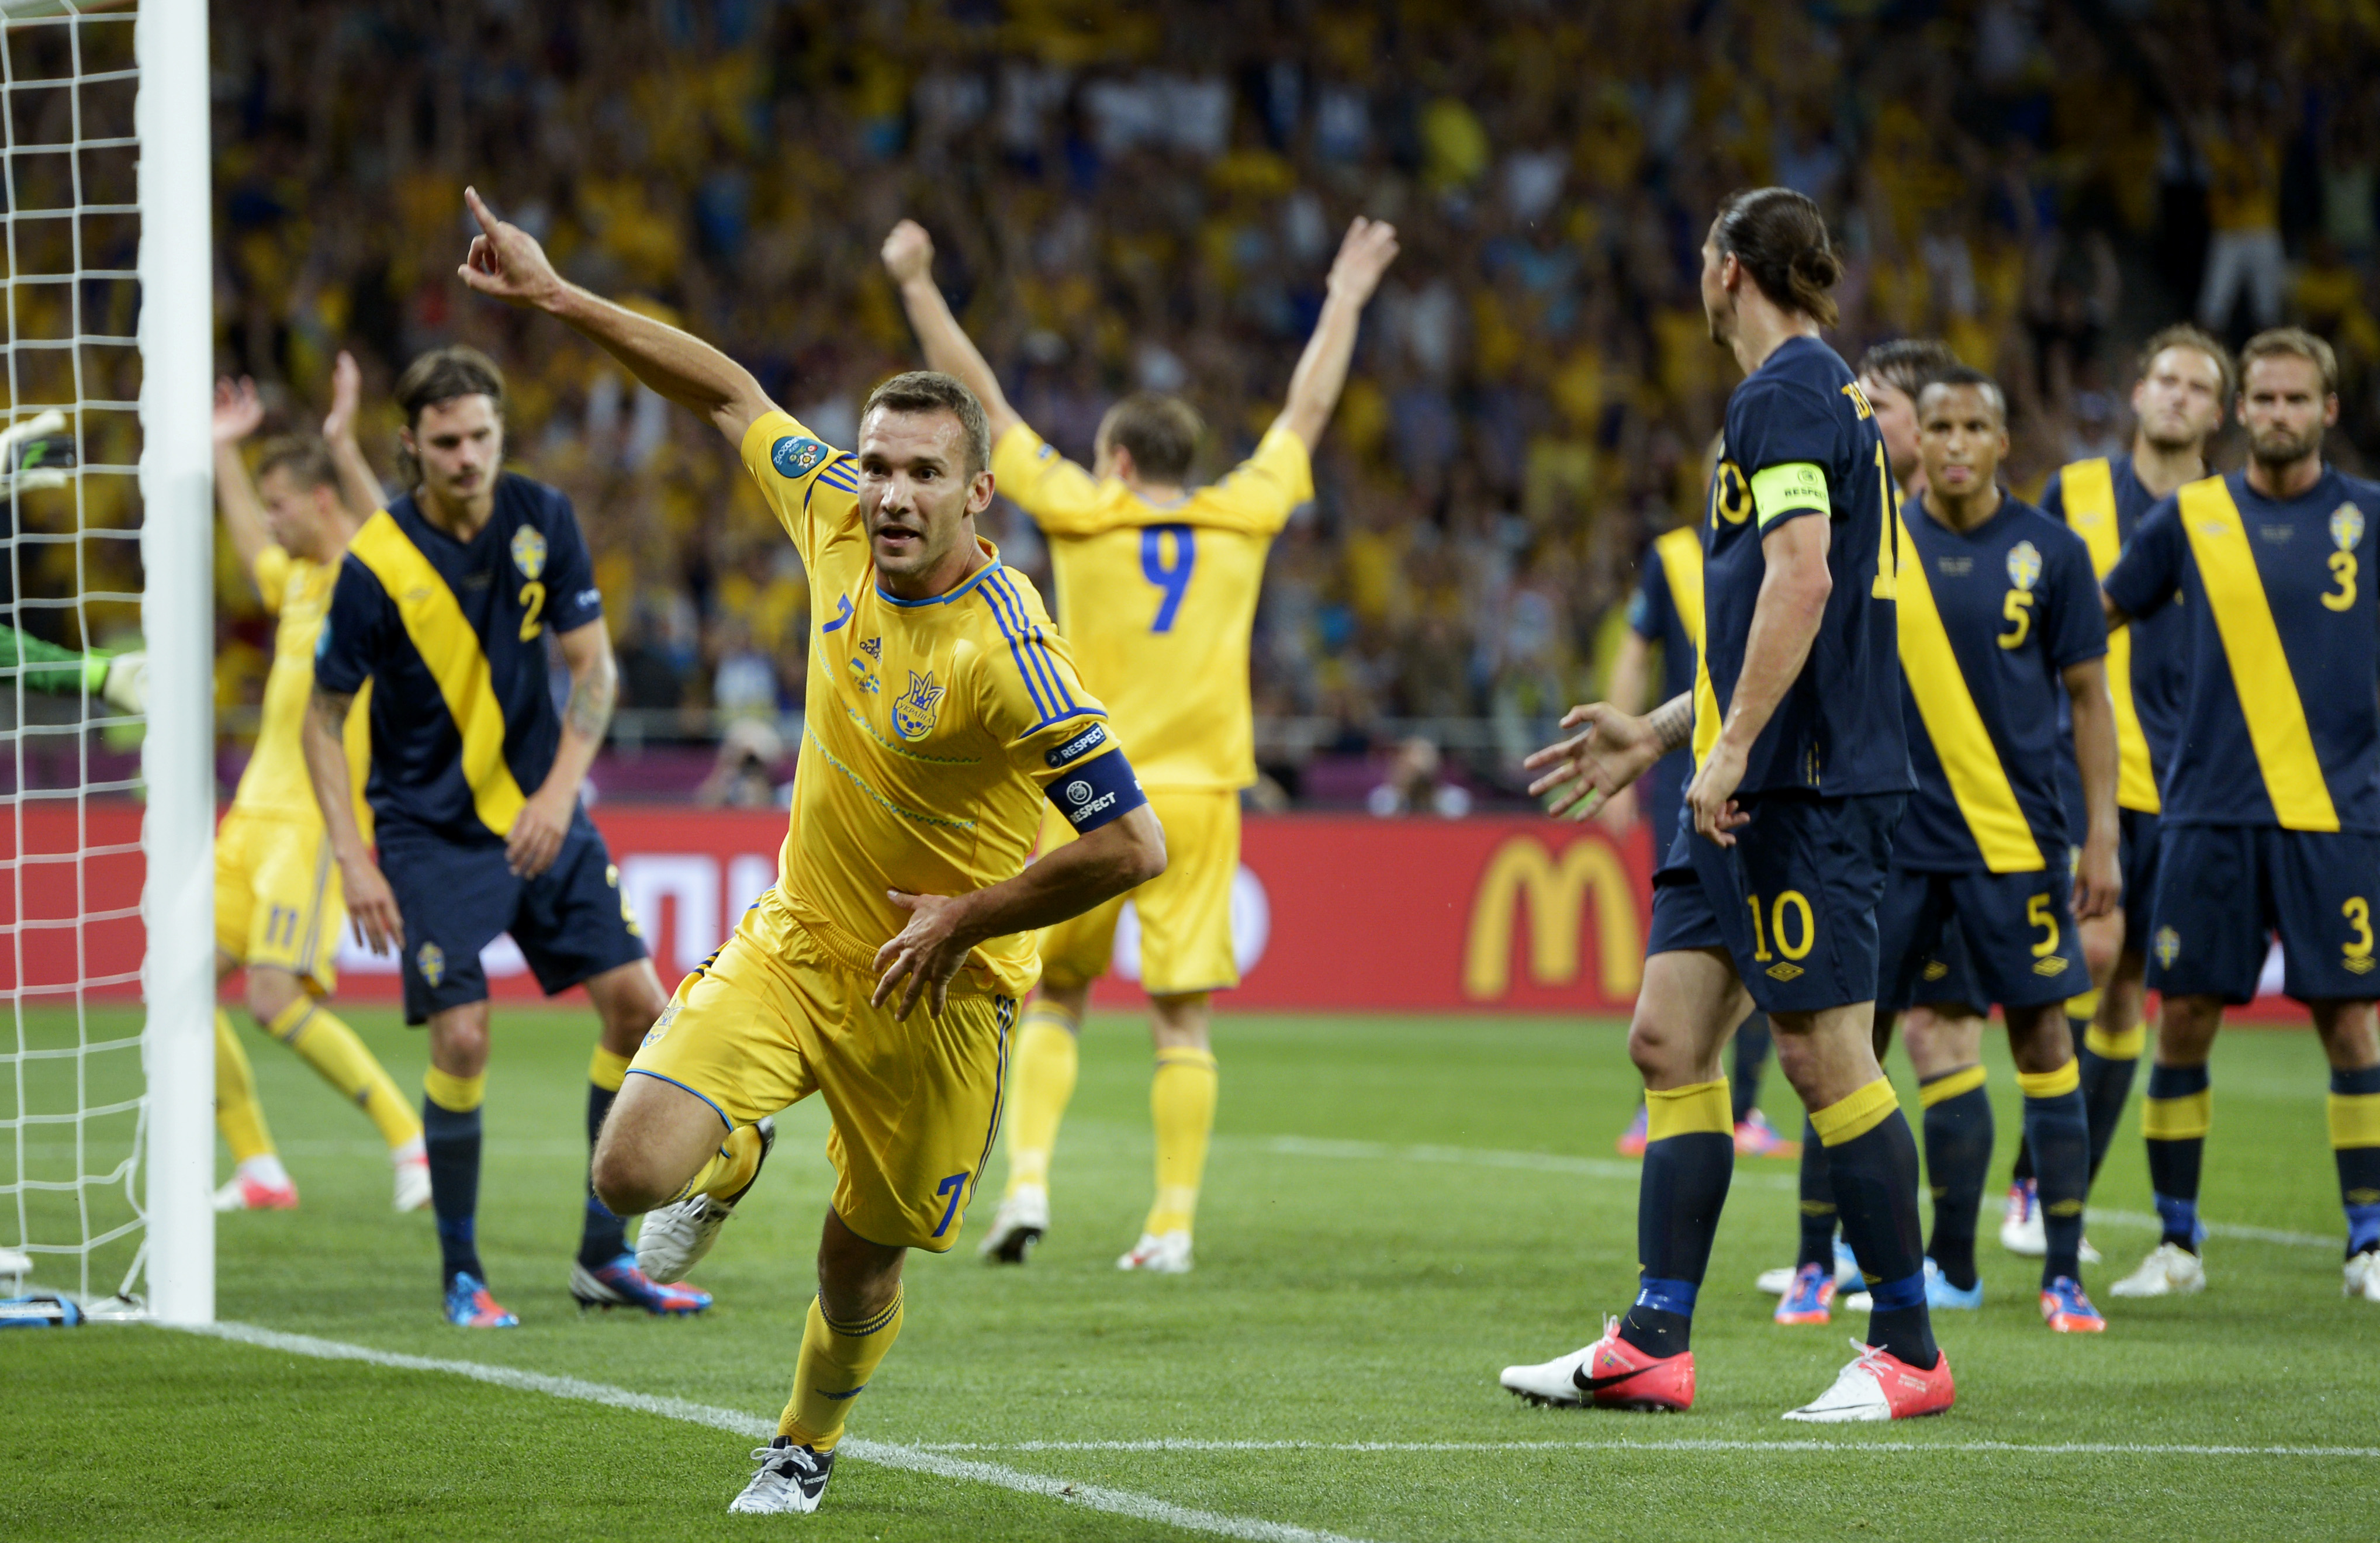 Sjevtjenko nickade in två mål på fem minuter och gav Ukraina segern.